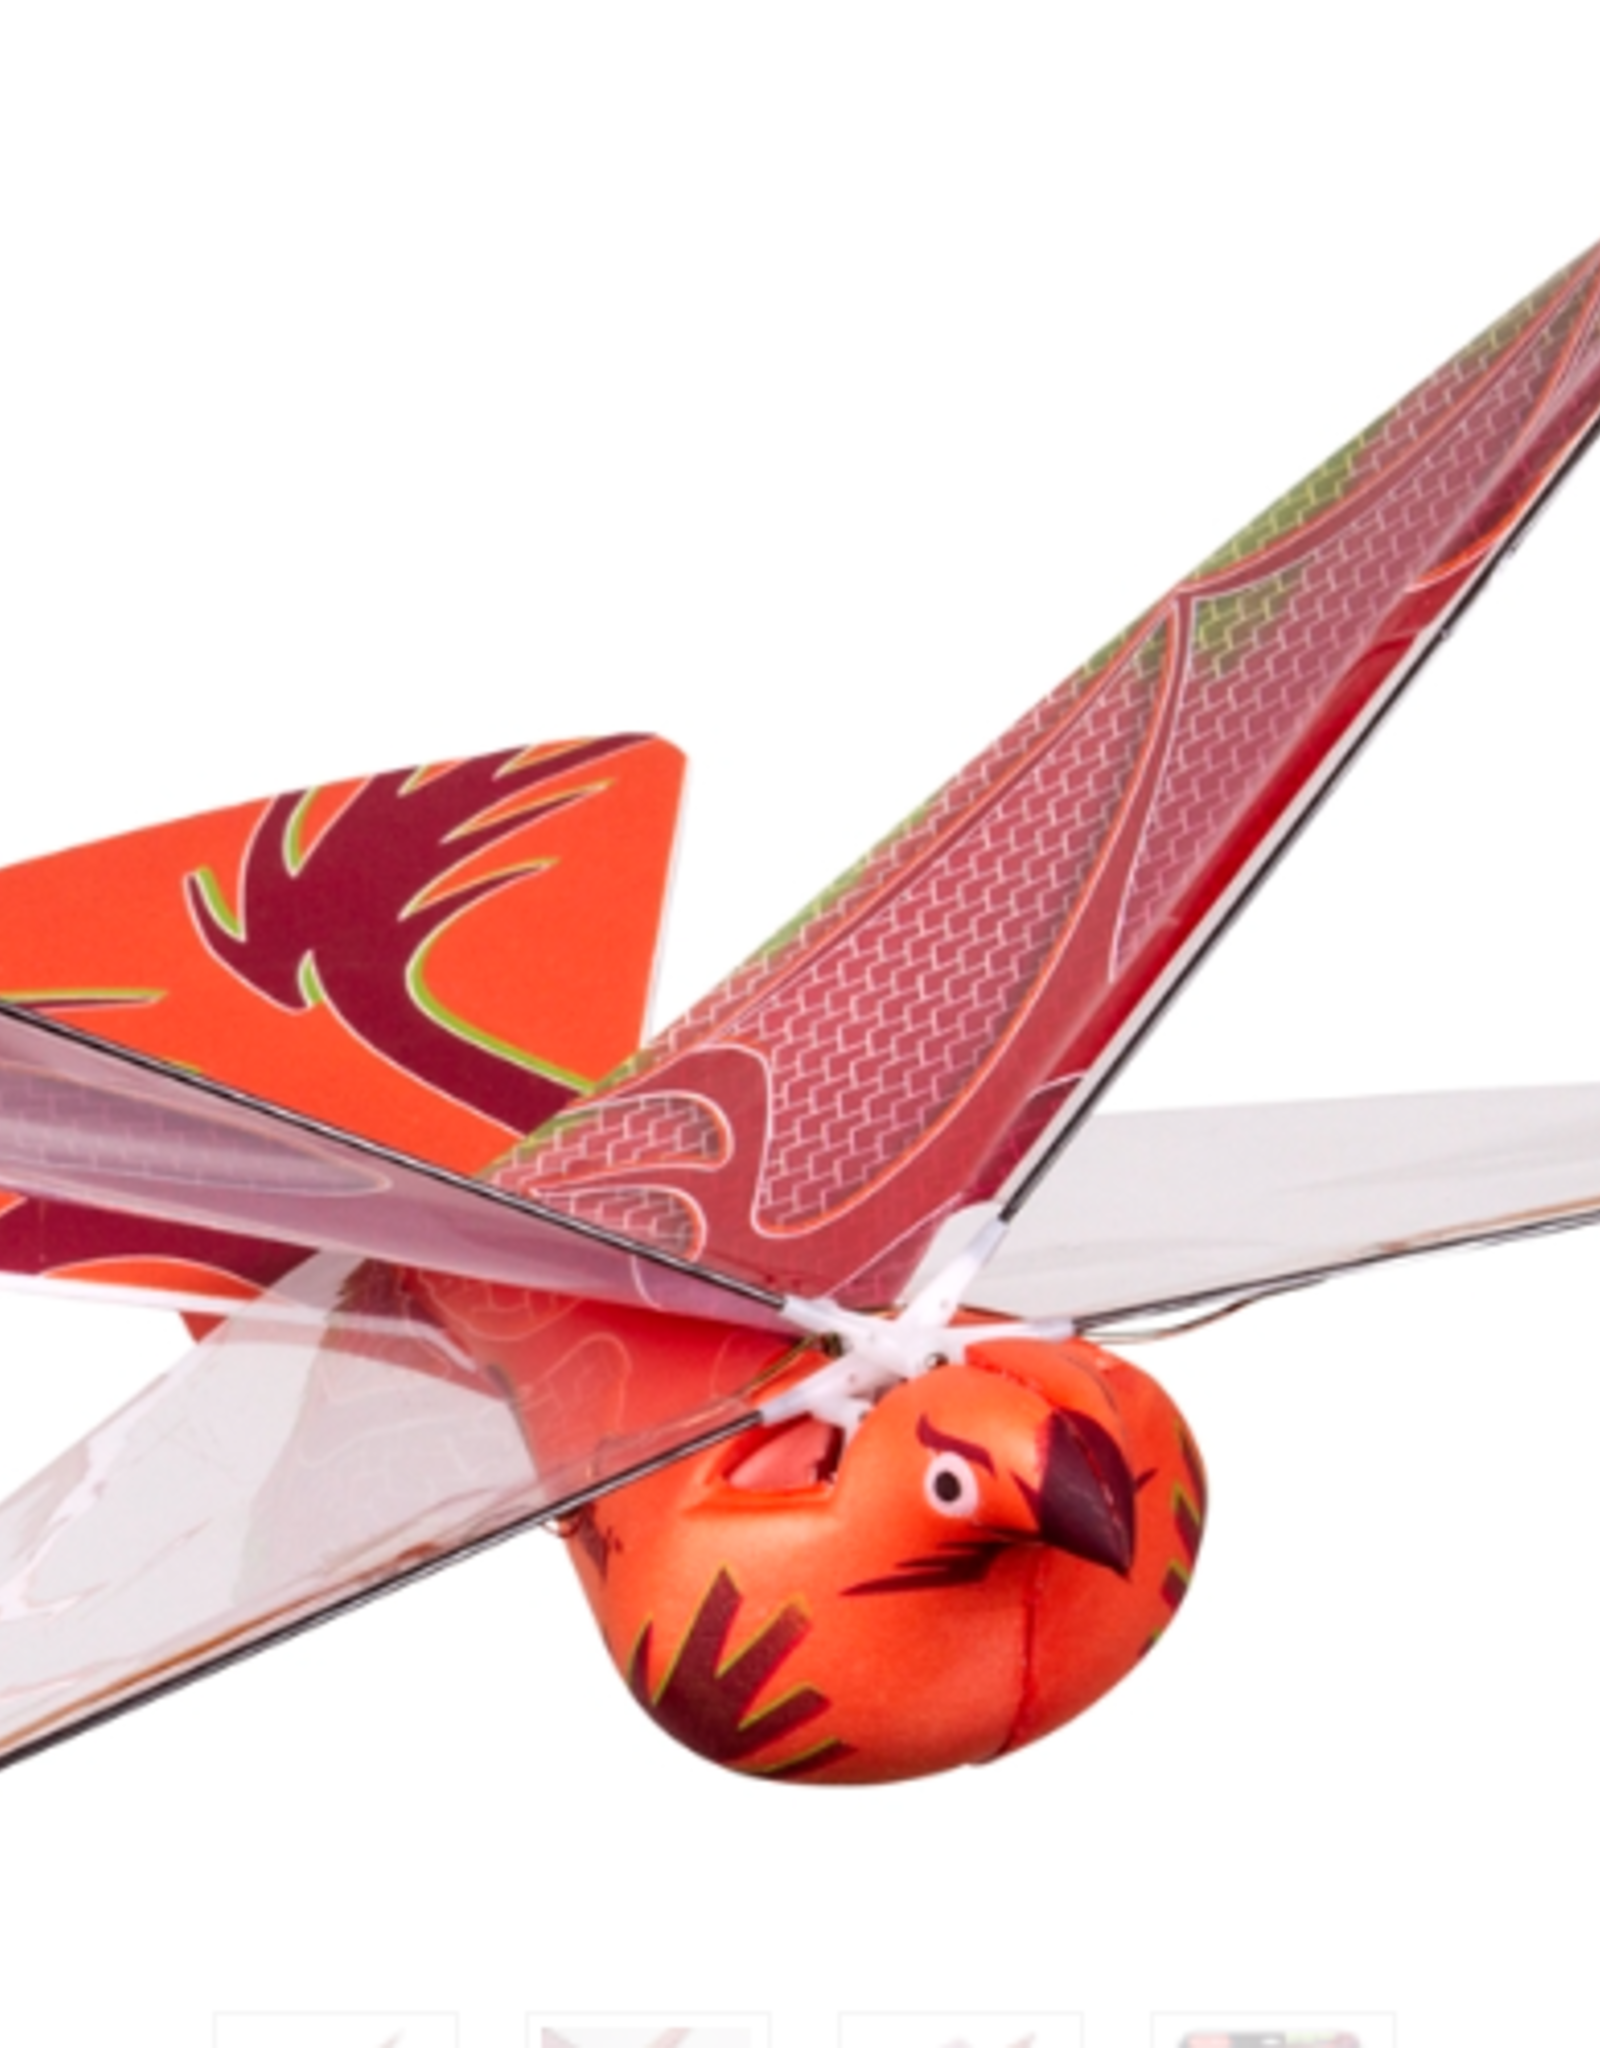 Dragon Hawk Flying Bird Glider